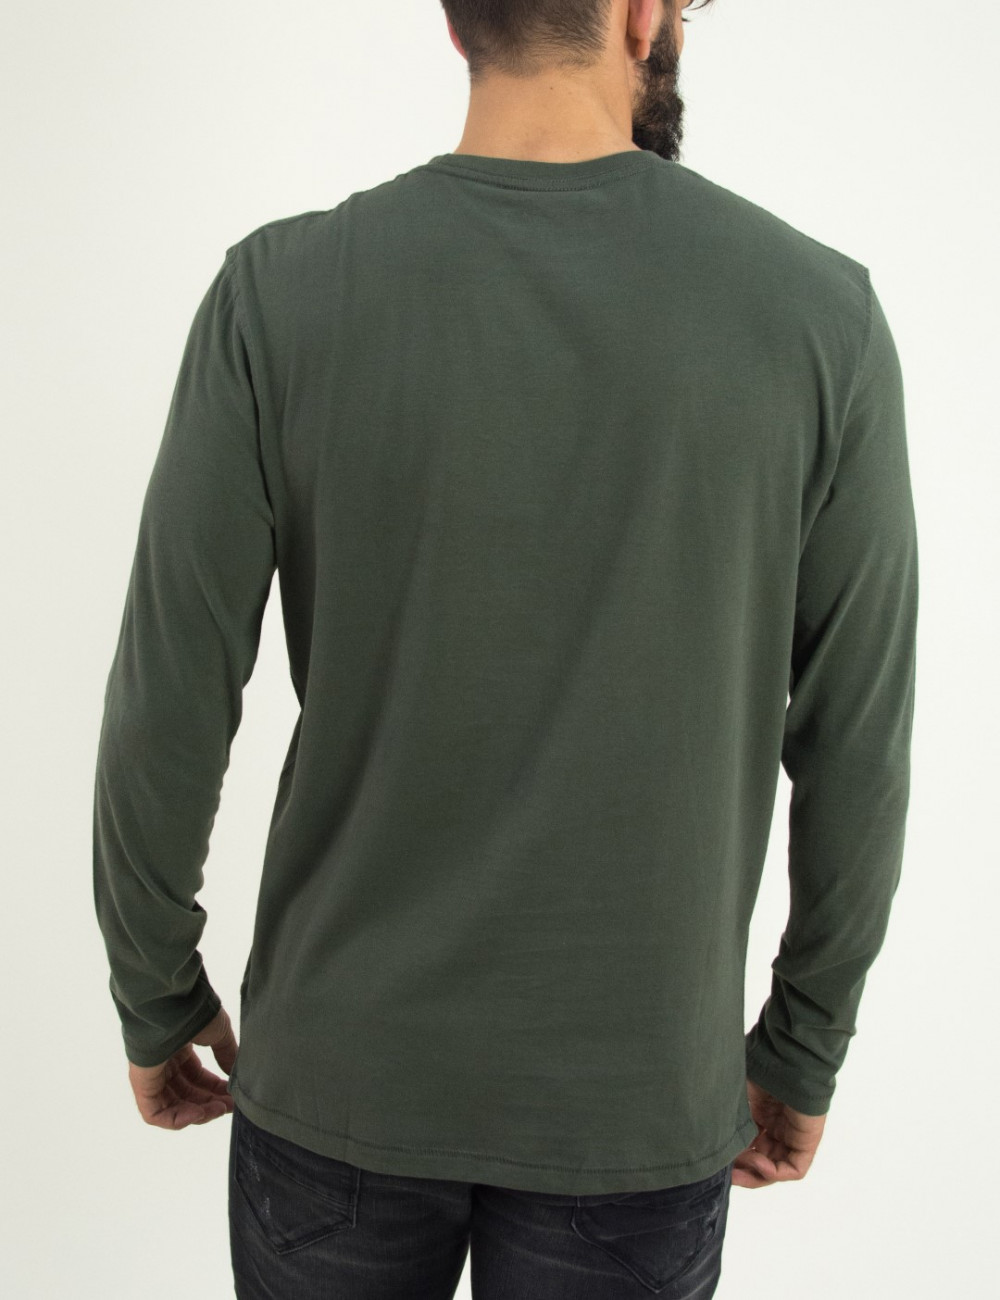 Ανδρική χακί λεπτή μακρυμάνικη μπλούζα Green Wood 02K900682